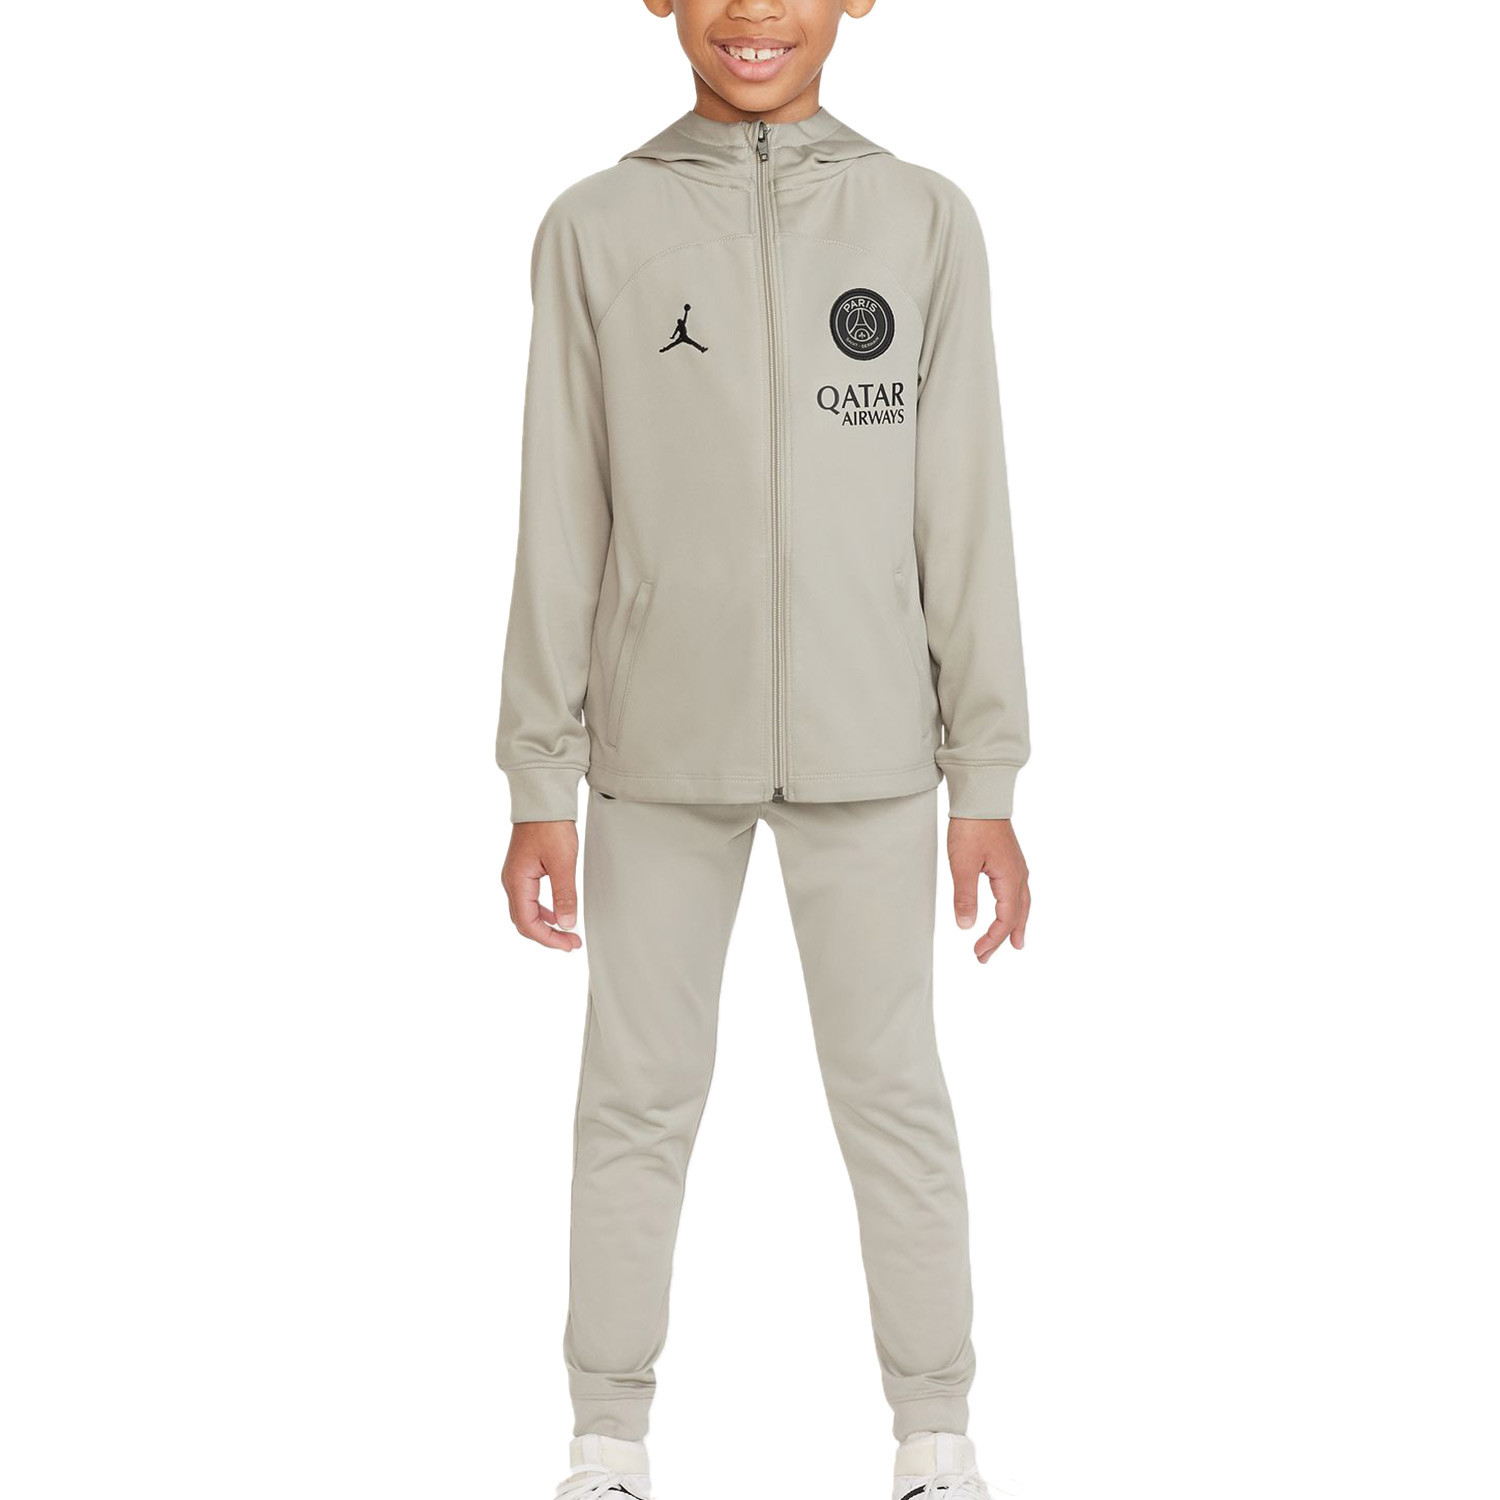 Chándal Nike PSG niño 3-8 años DF Stk Hoodie gris